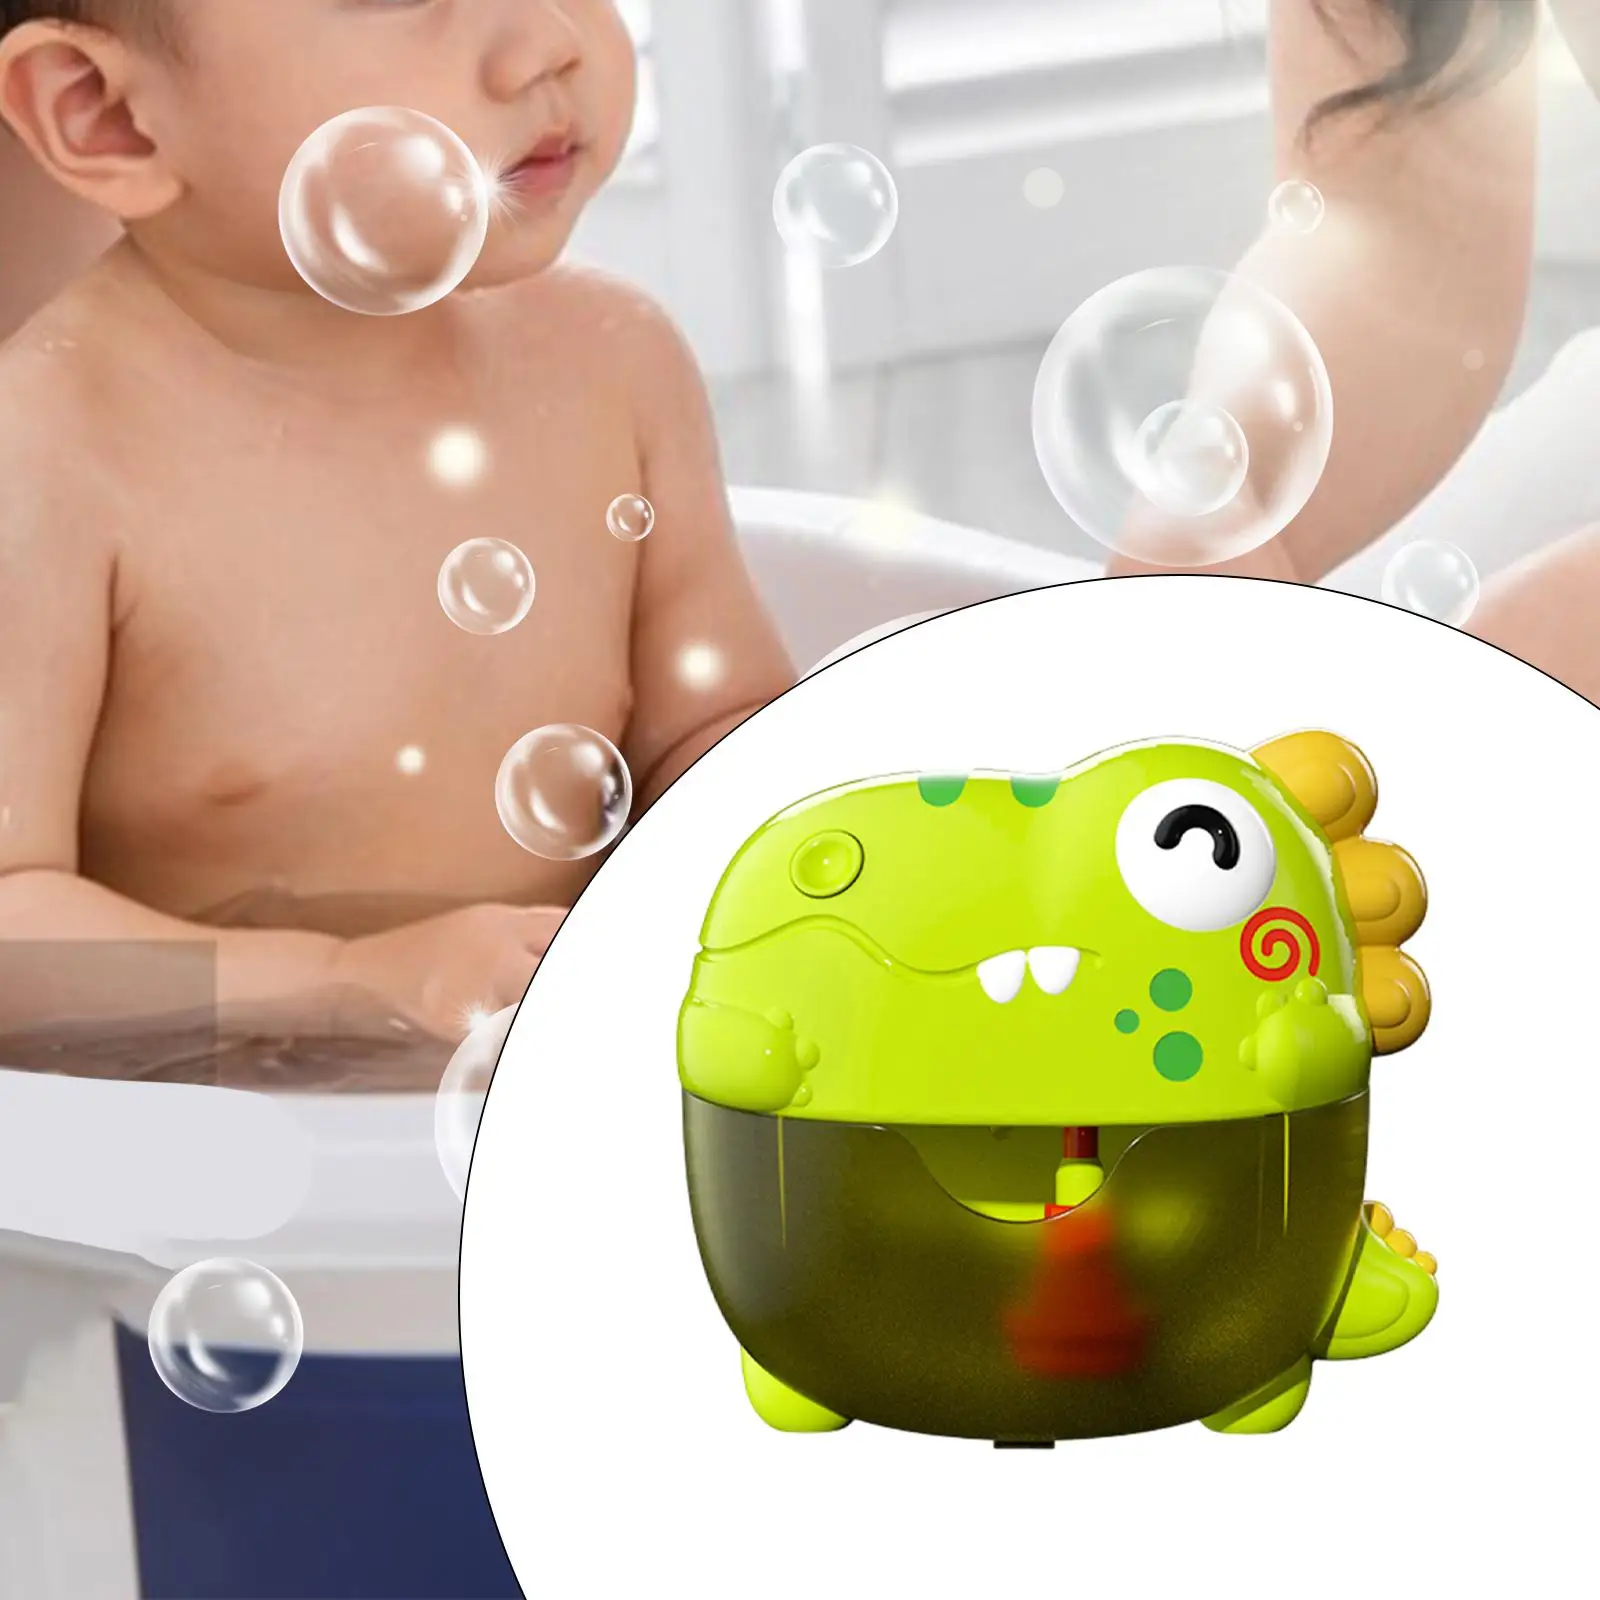 

Динозавр для ванны, устройство для создания пузырей, подарок на день рождения, Рождество, плавательный бассейн, игрушка для ванной комнаты, игрушка для мальчиков, Детская ванна